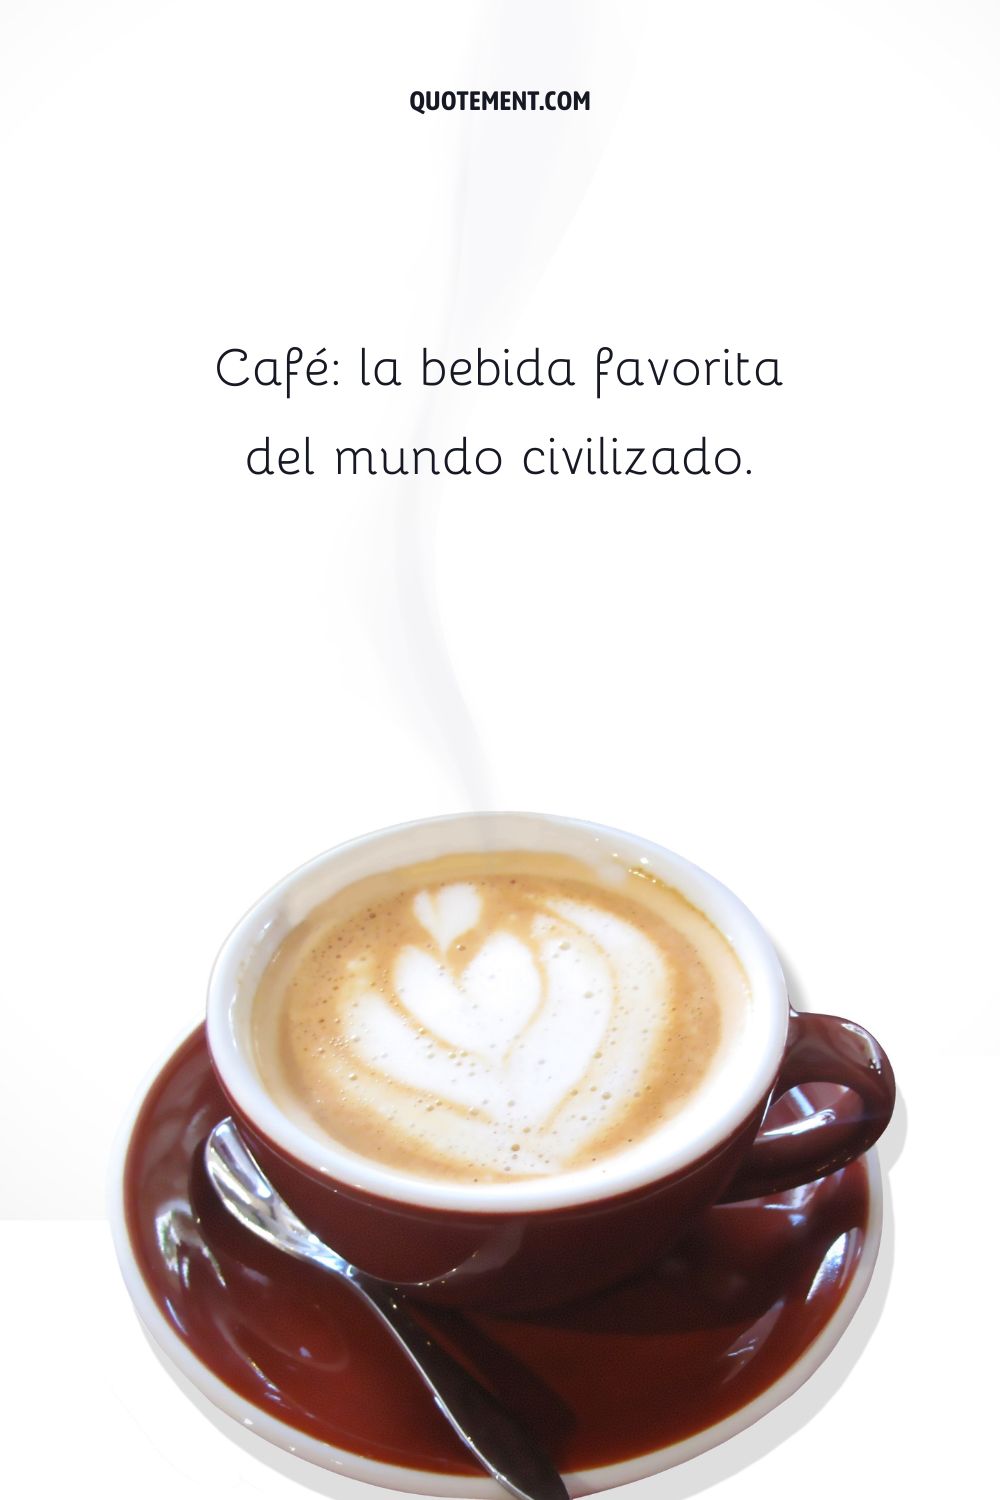 El café, la bebida favorita del mundo civilizado